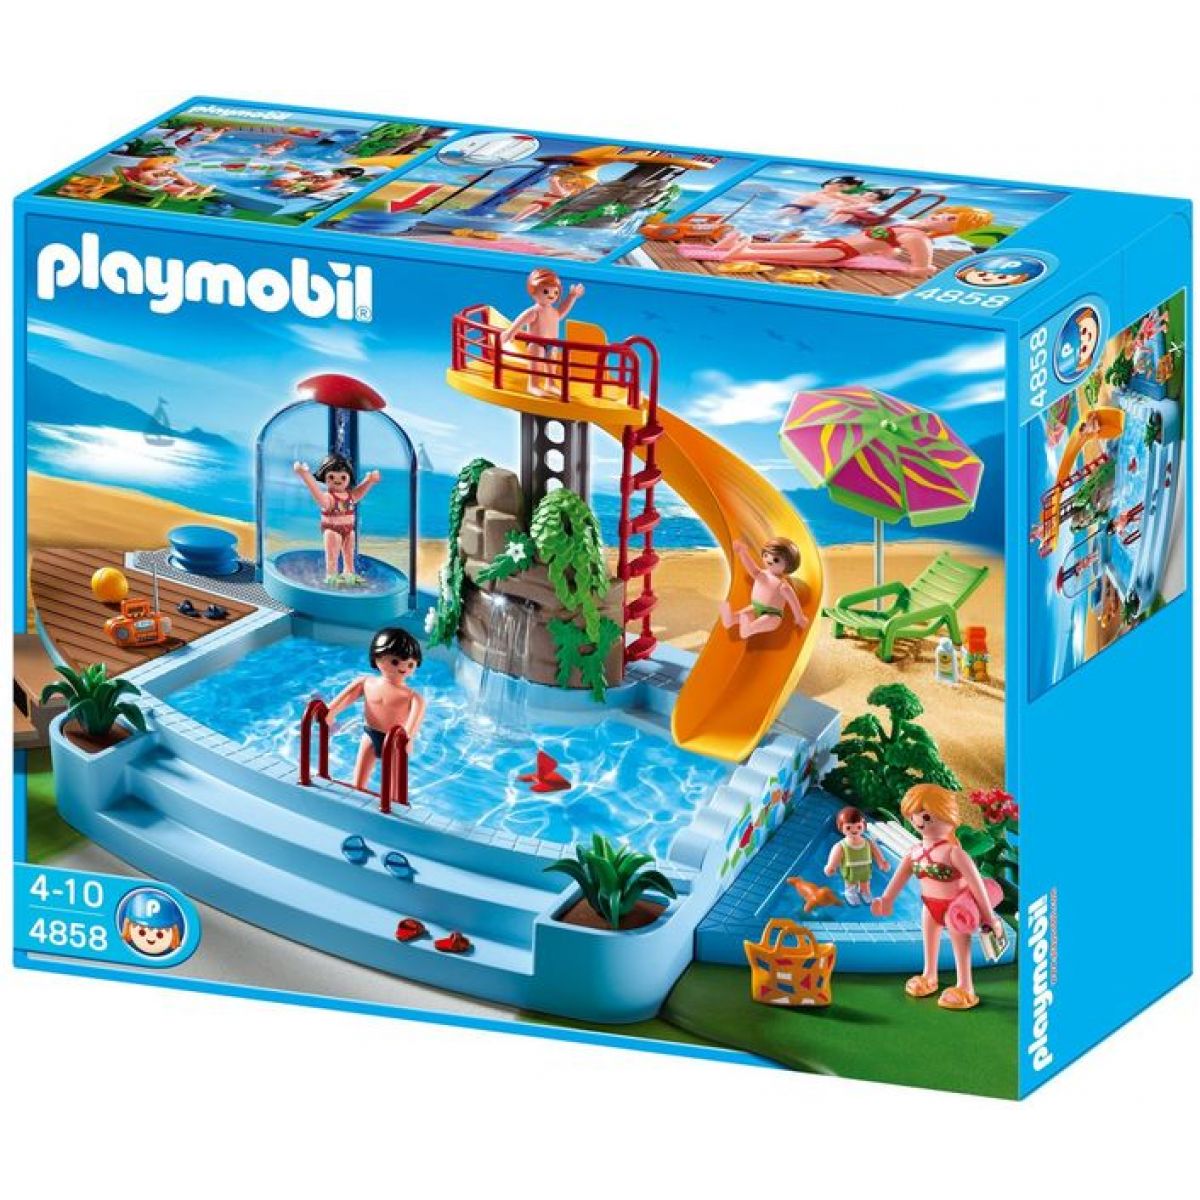 Playmobil 4858 - Bazén se skluzavkou